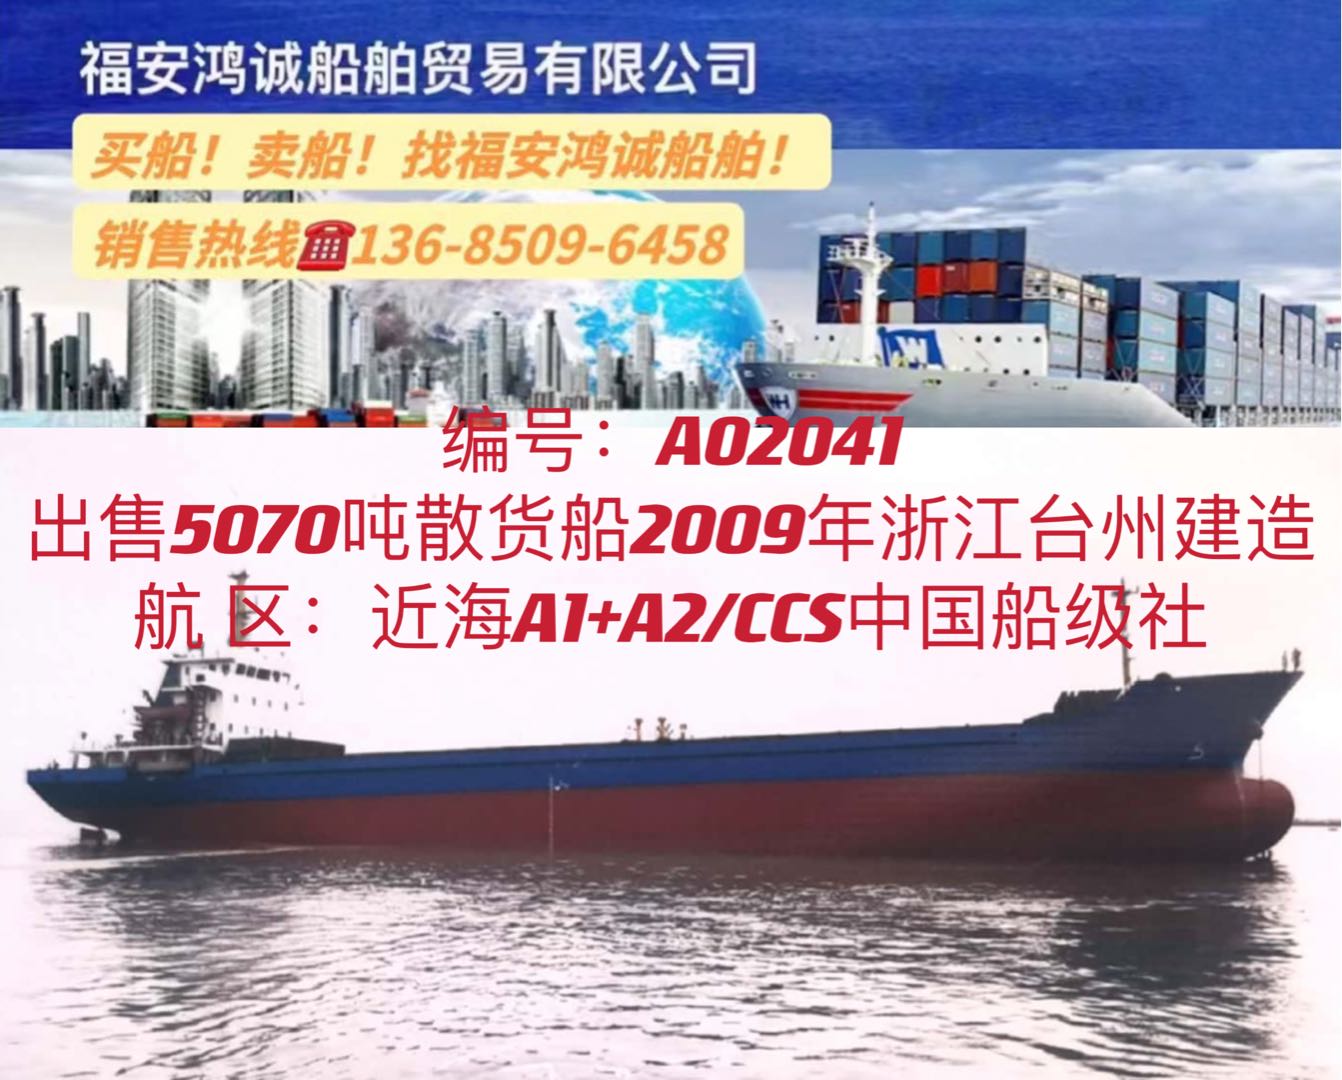 出售09年5070吨散货船